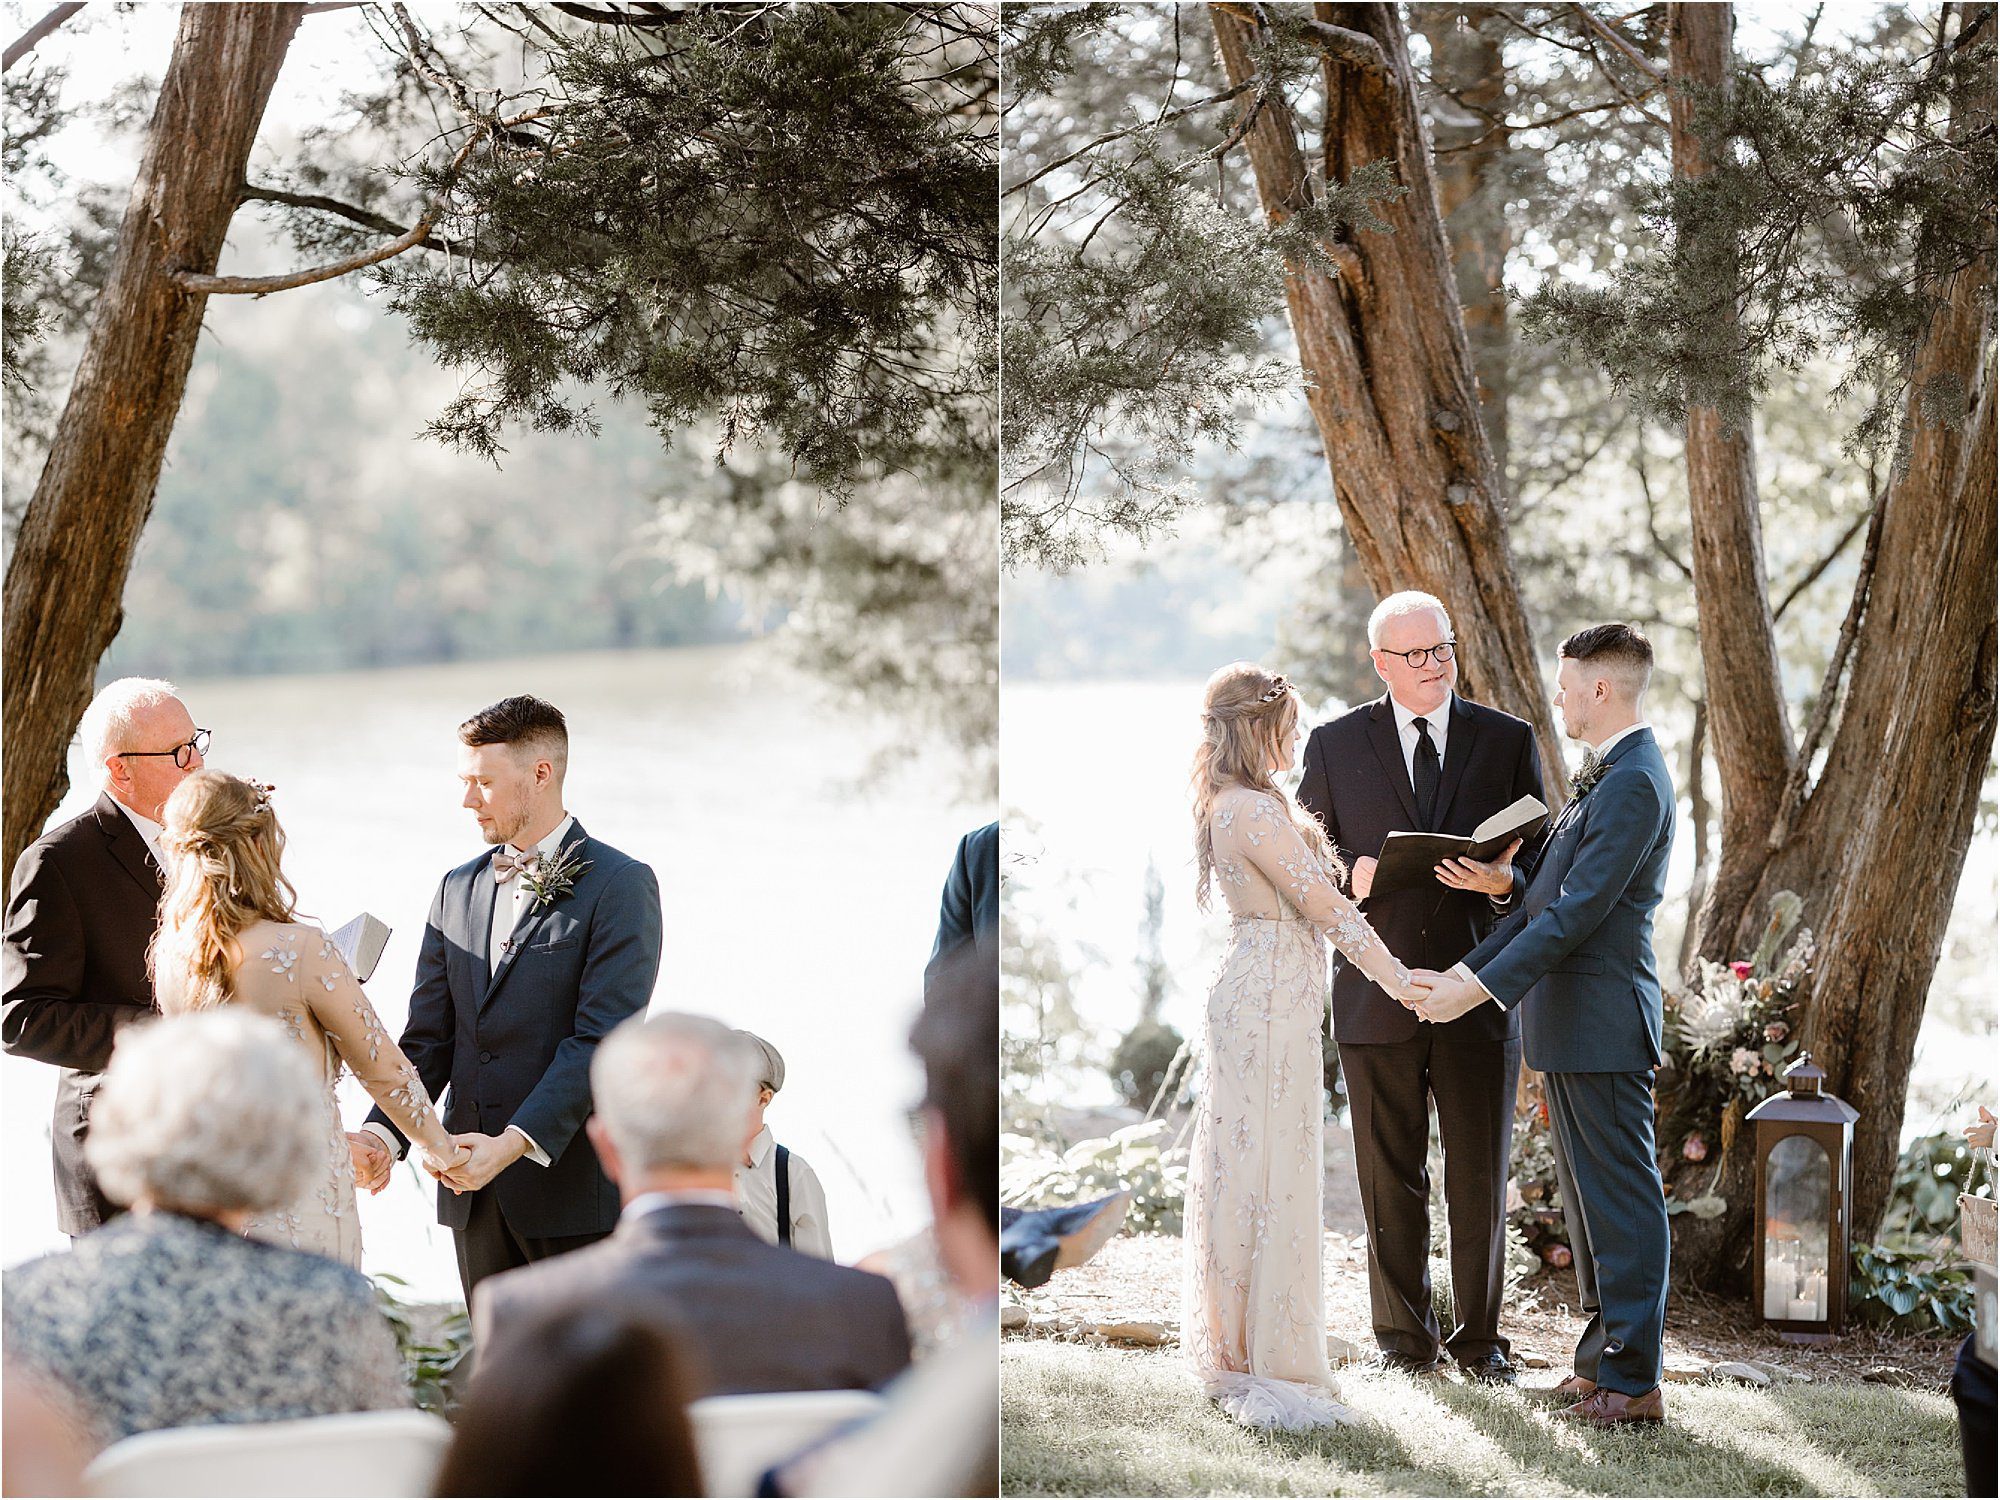 sunny wedding ceremony under large tree